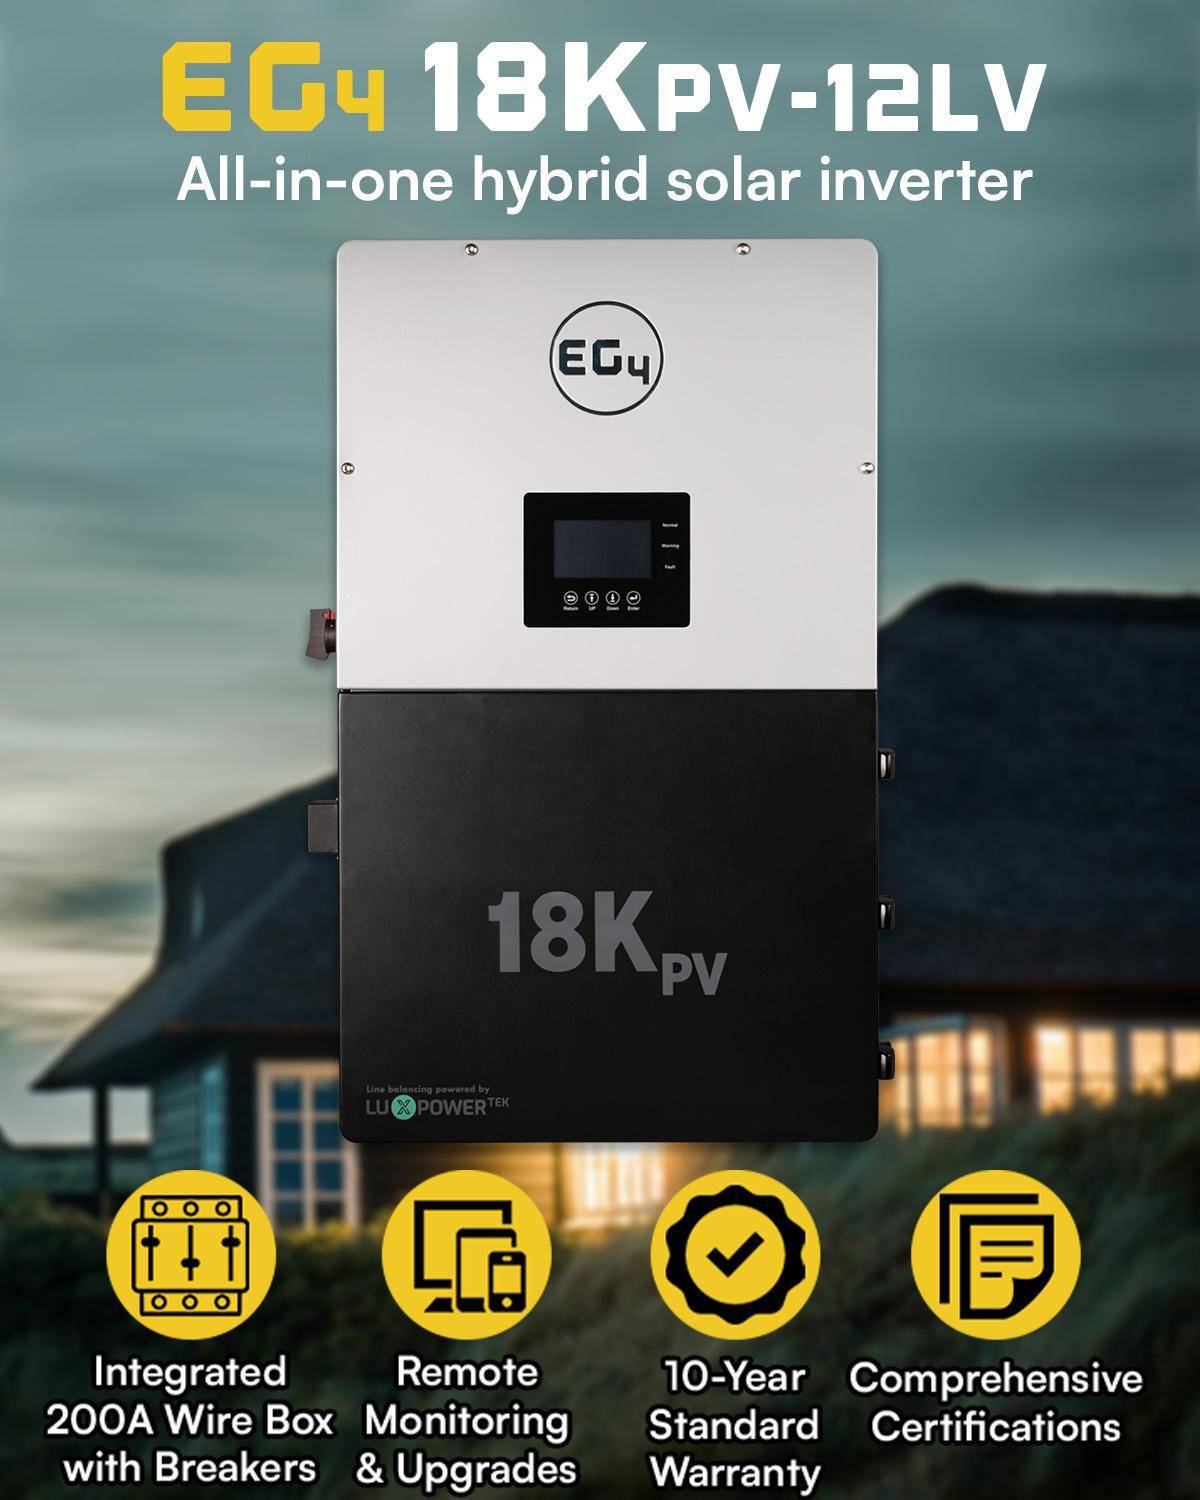 EG4 18kPV - 12LV all in one hybrid solar inverter